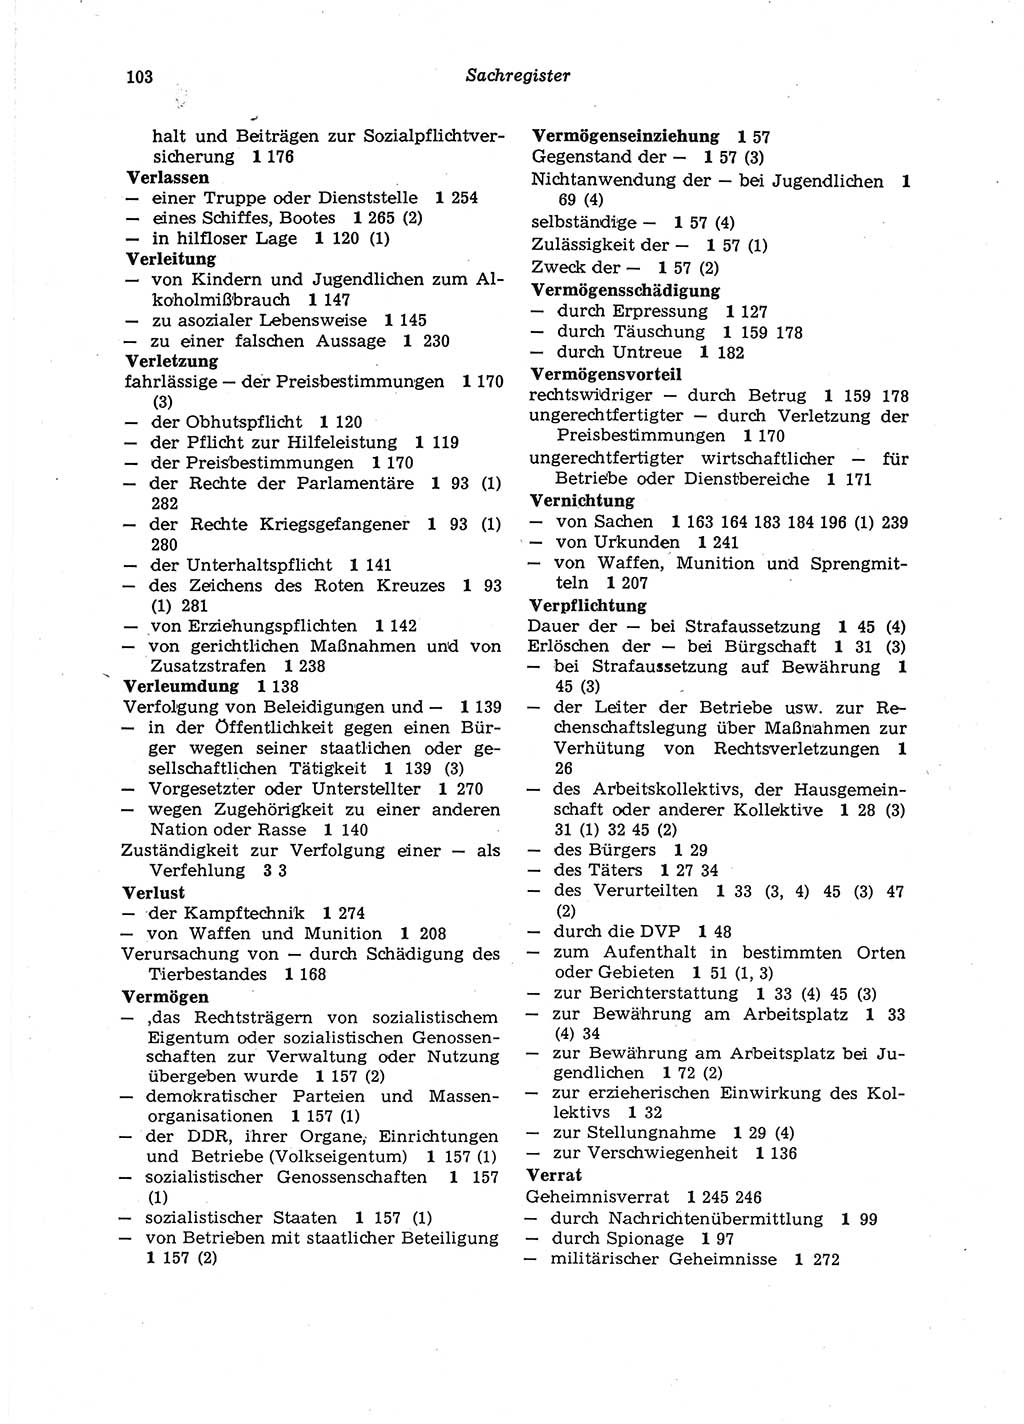 Strafgesetzbuch (StGB) der Deutschen Demokratischen Republik (DDR) 1987, Seite 103 (StGB DDR 1987, S. 103)